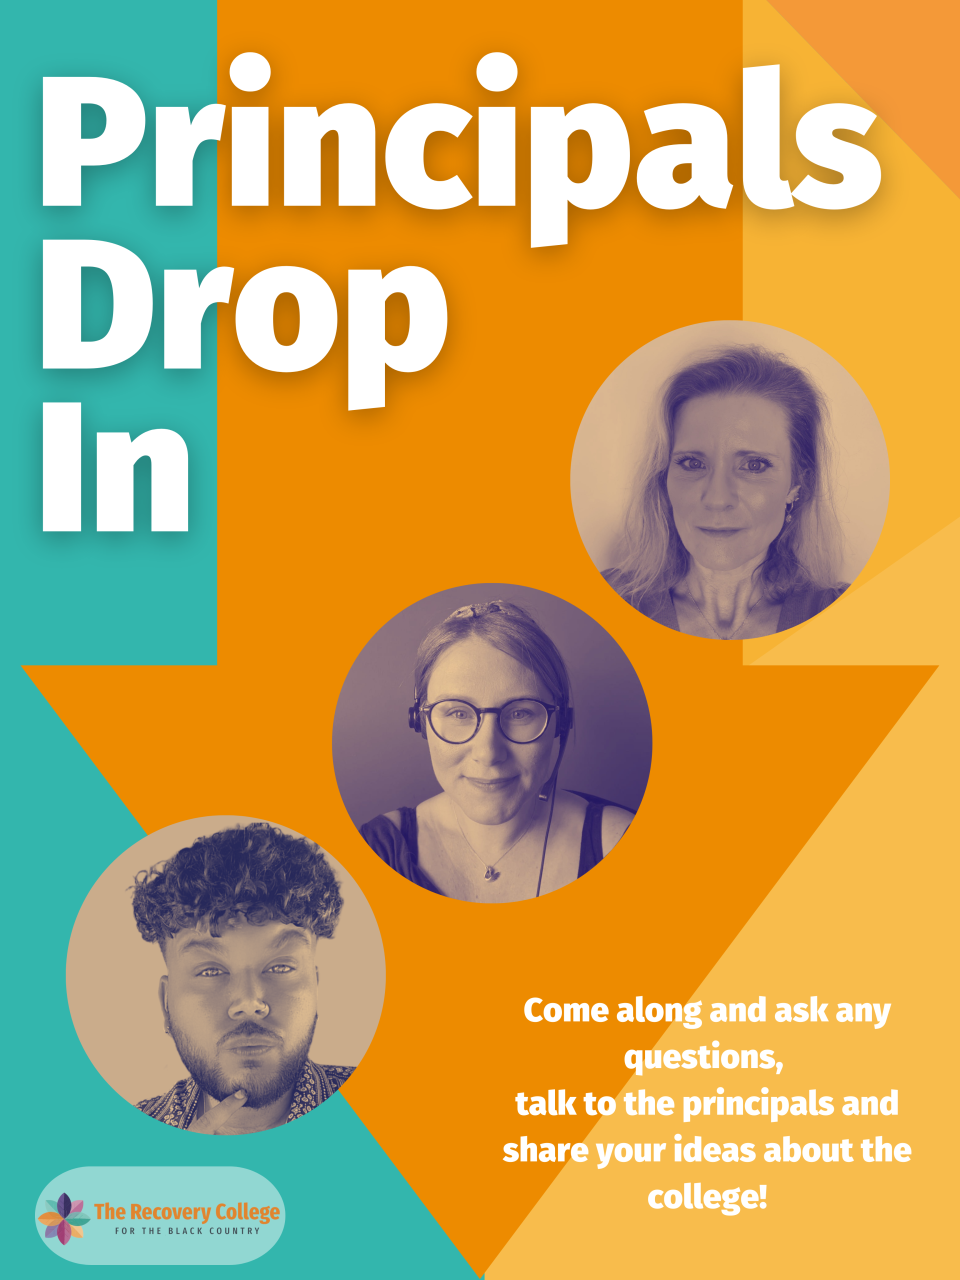 Principal's Drop In